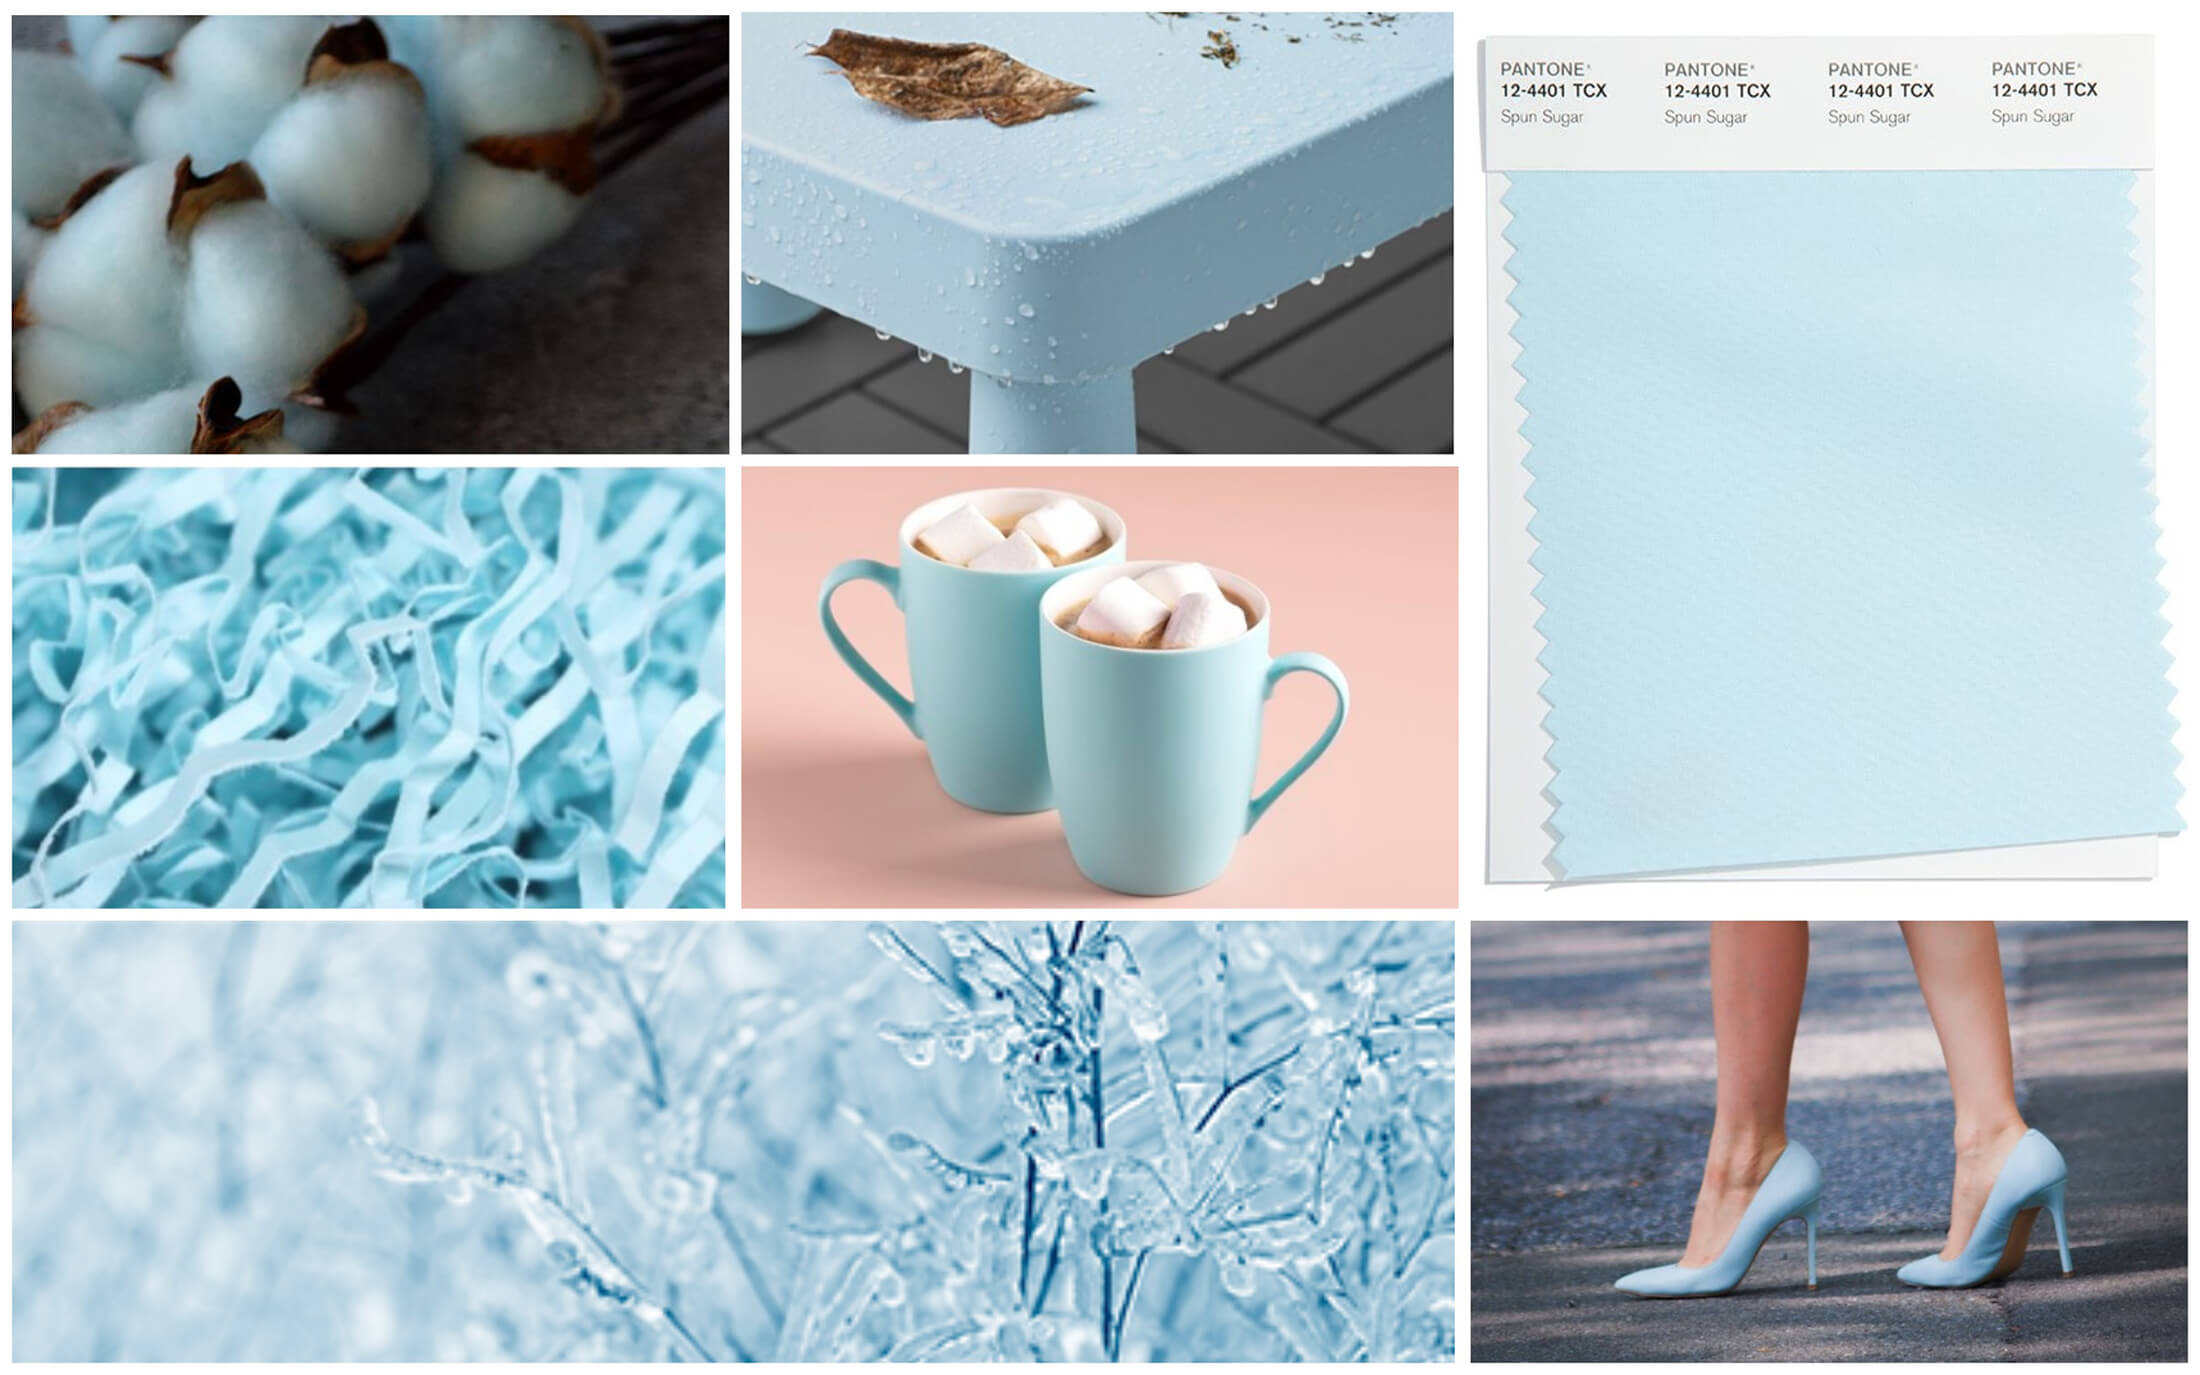 Нежно-голубой оттенок Spun Sugar. Модные цвета и оттенки 2022 Пантон - палитра весна лета 2022 по версии института цвета